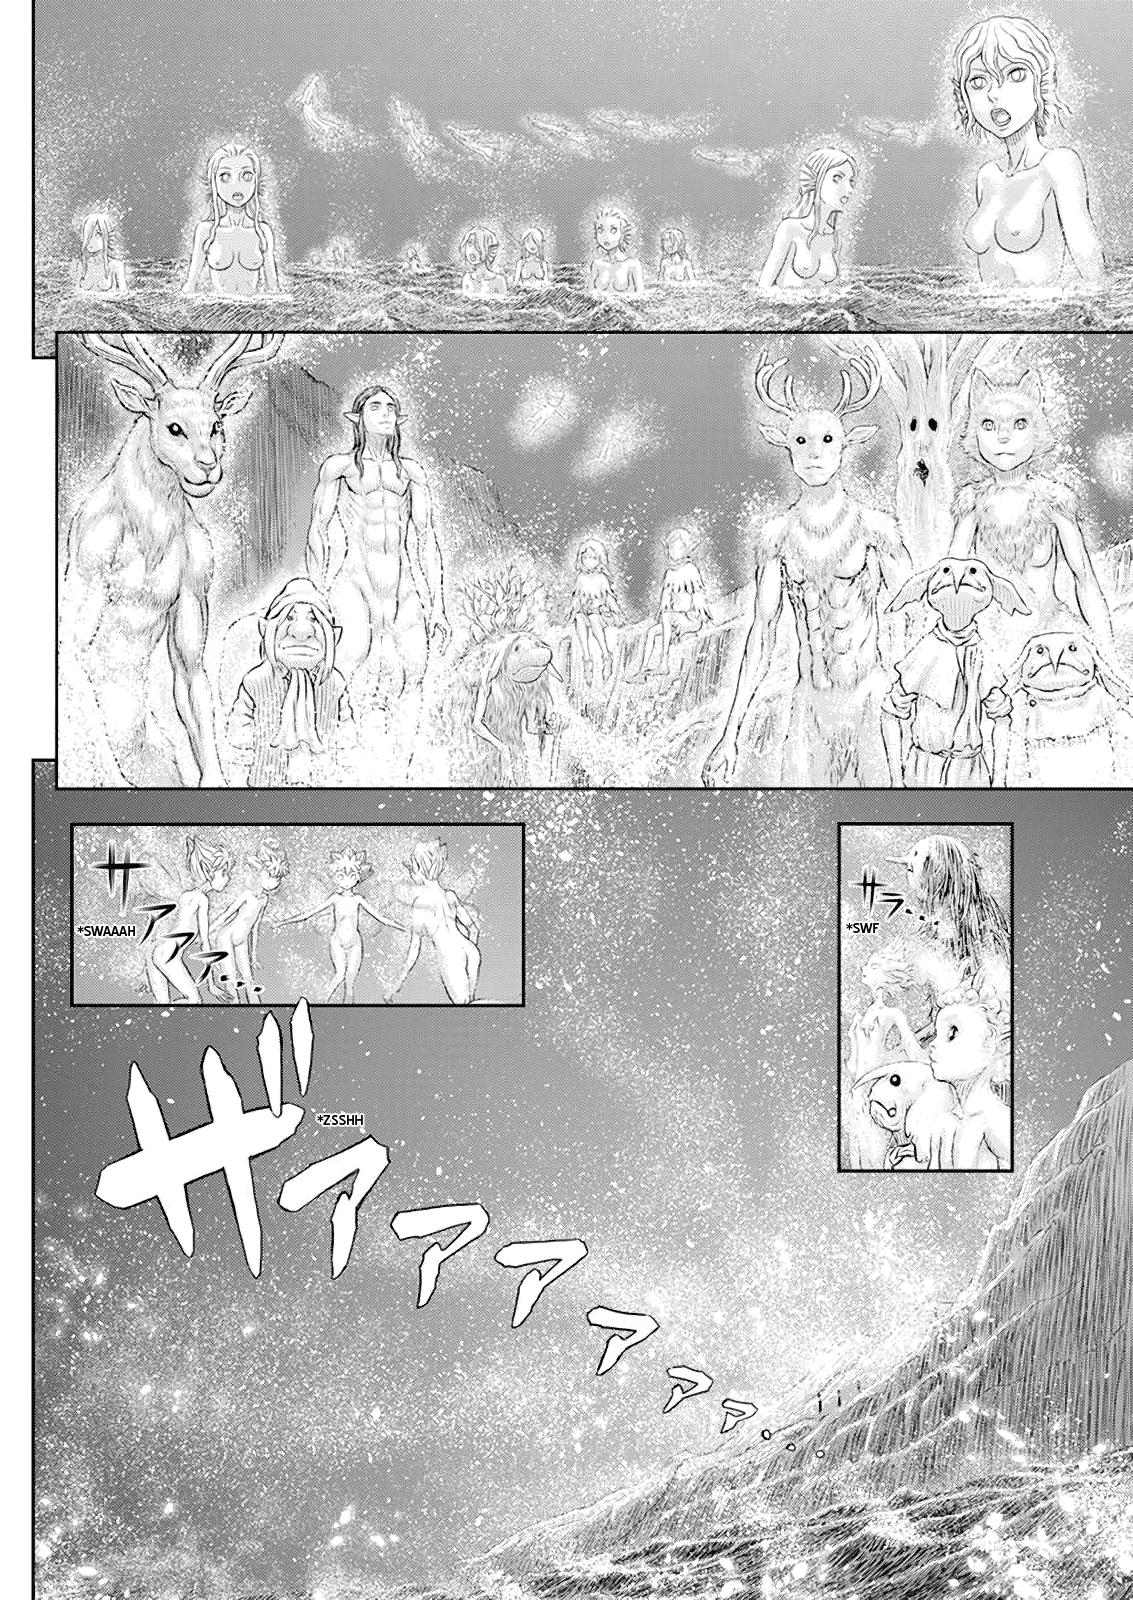 Berserk Manga Chapter 369 image 13